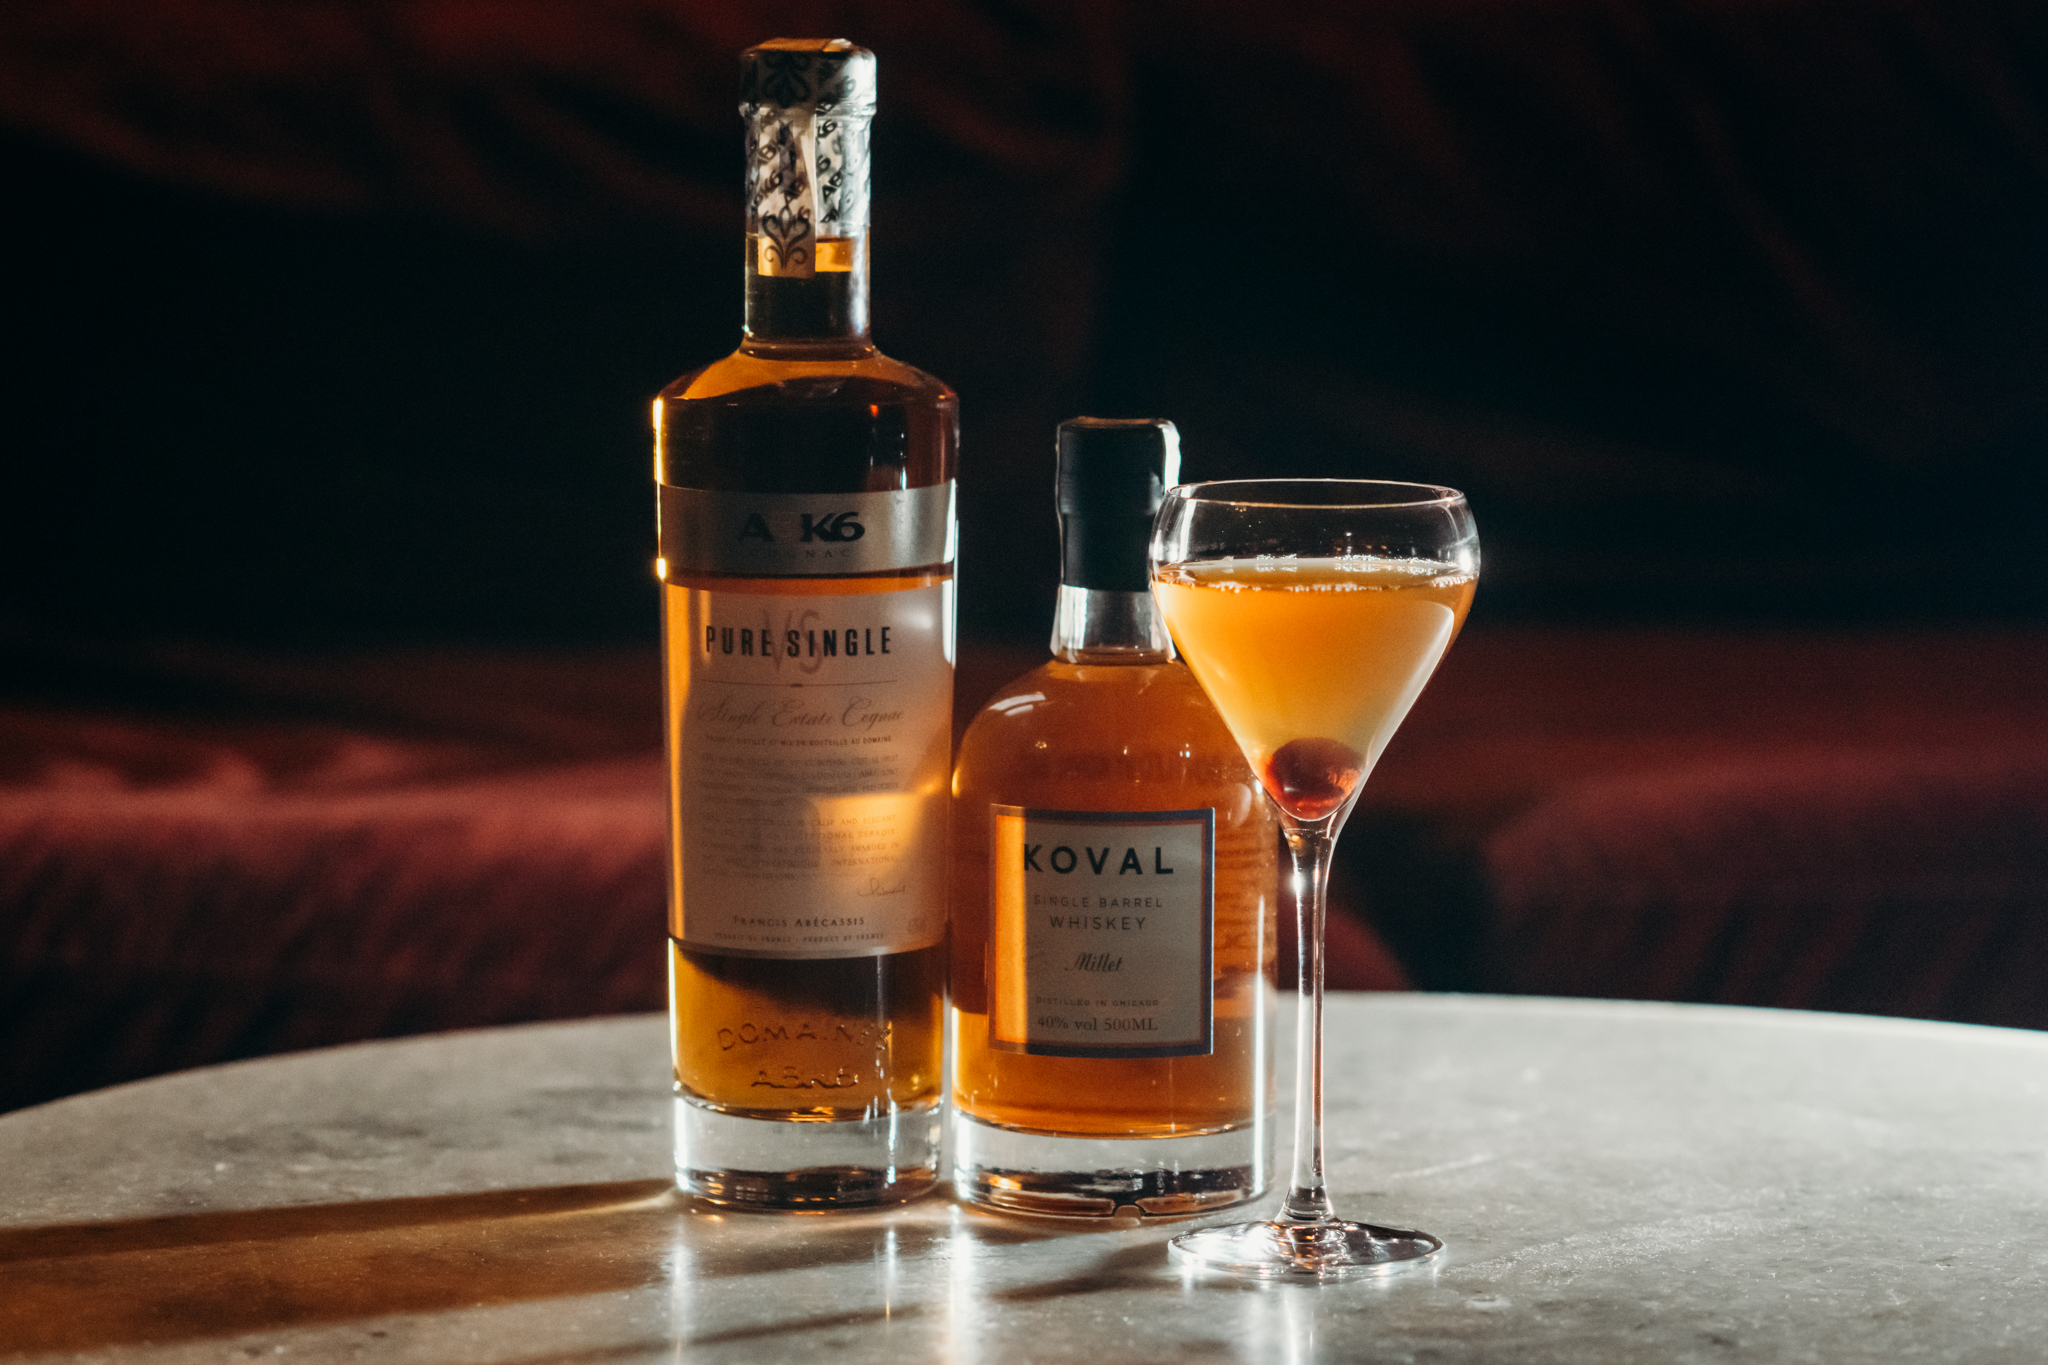 Kokteil z whisky Koval a Cognac ABK6